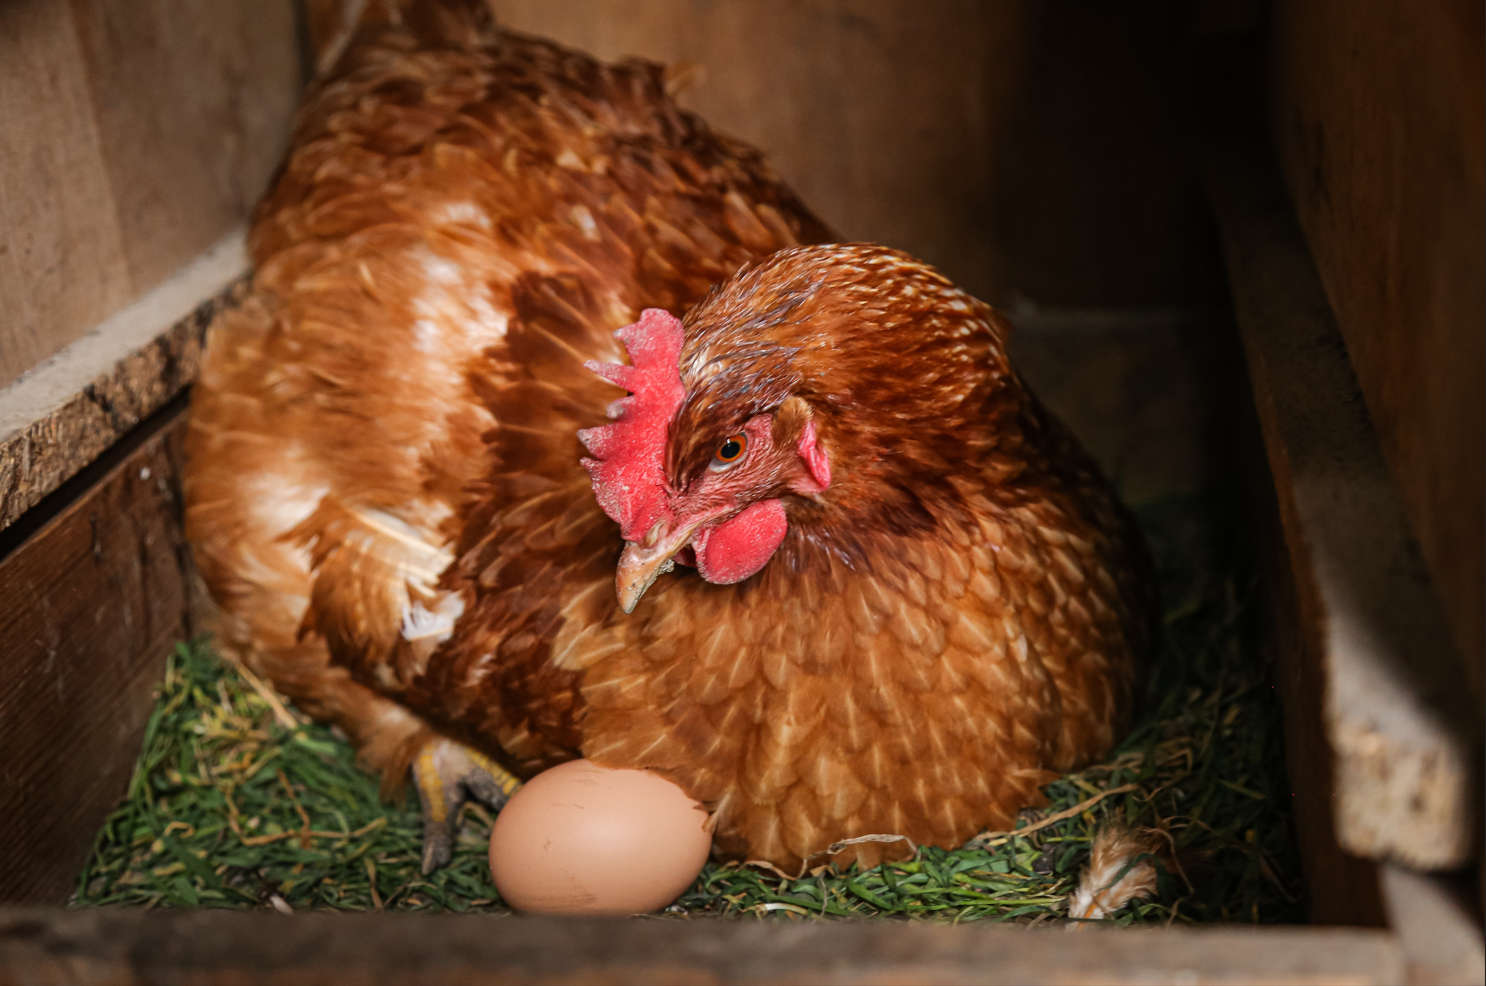 Qui de l’œuf ou de la poule est le plus ancien ?